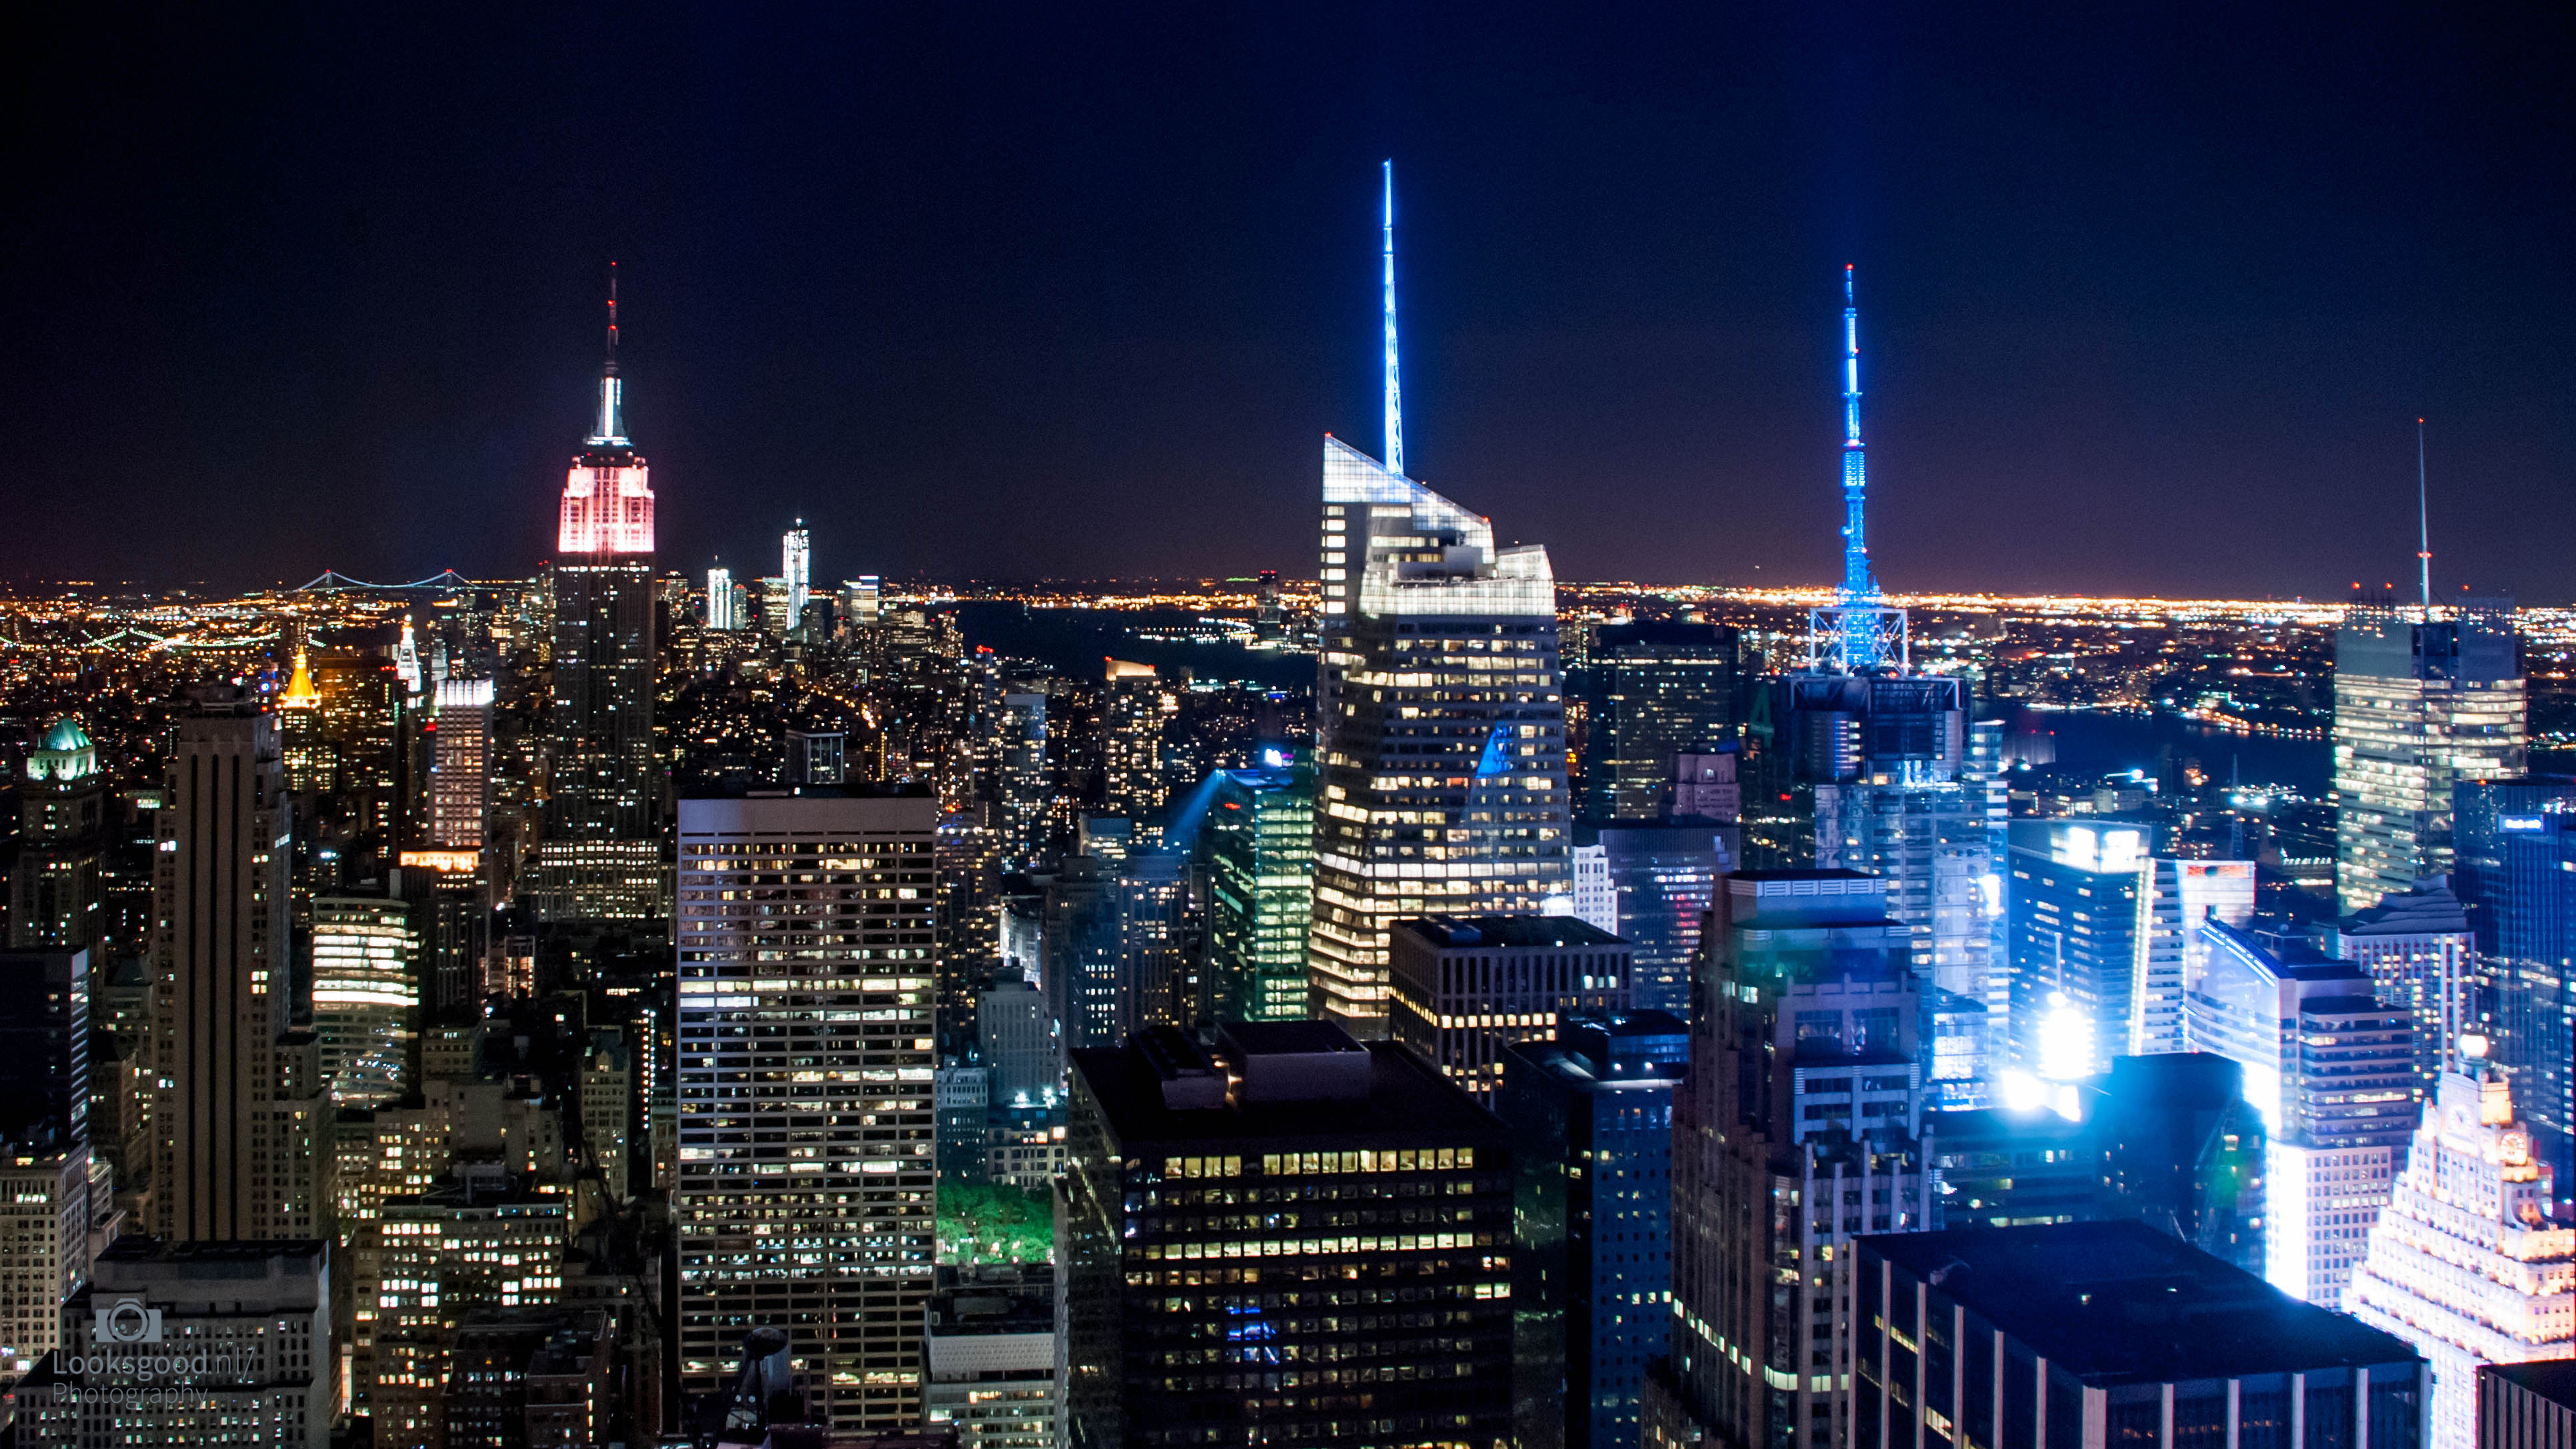 Đối với những người yêu thích thành phố New York, tận hưởng những khoảnh khắc duy nhất của thành phố đầy đèn lấp lánh và lãng mạn. Chúng tôi mong muốn những bức ảnh này sẽ đem đến cho bạn cảm giác đặc biệt và hăng say khám phá New York đêm.